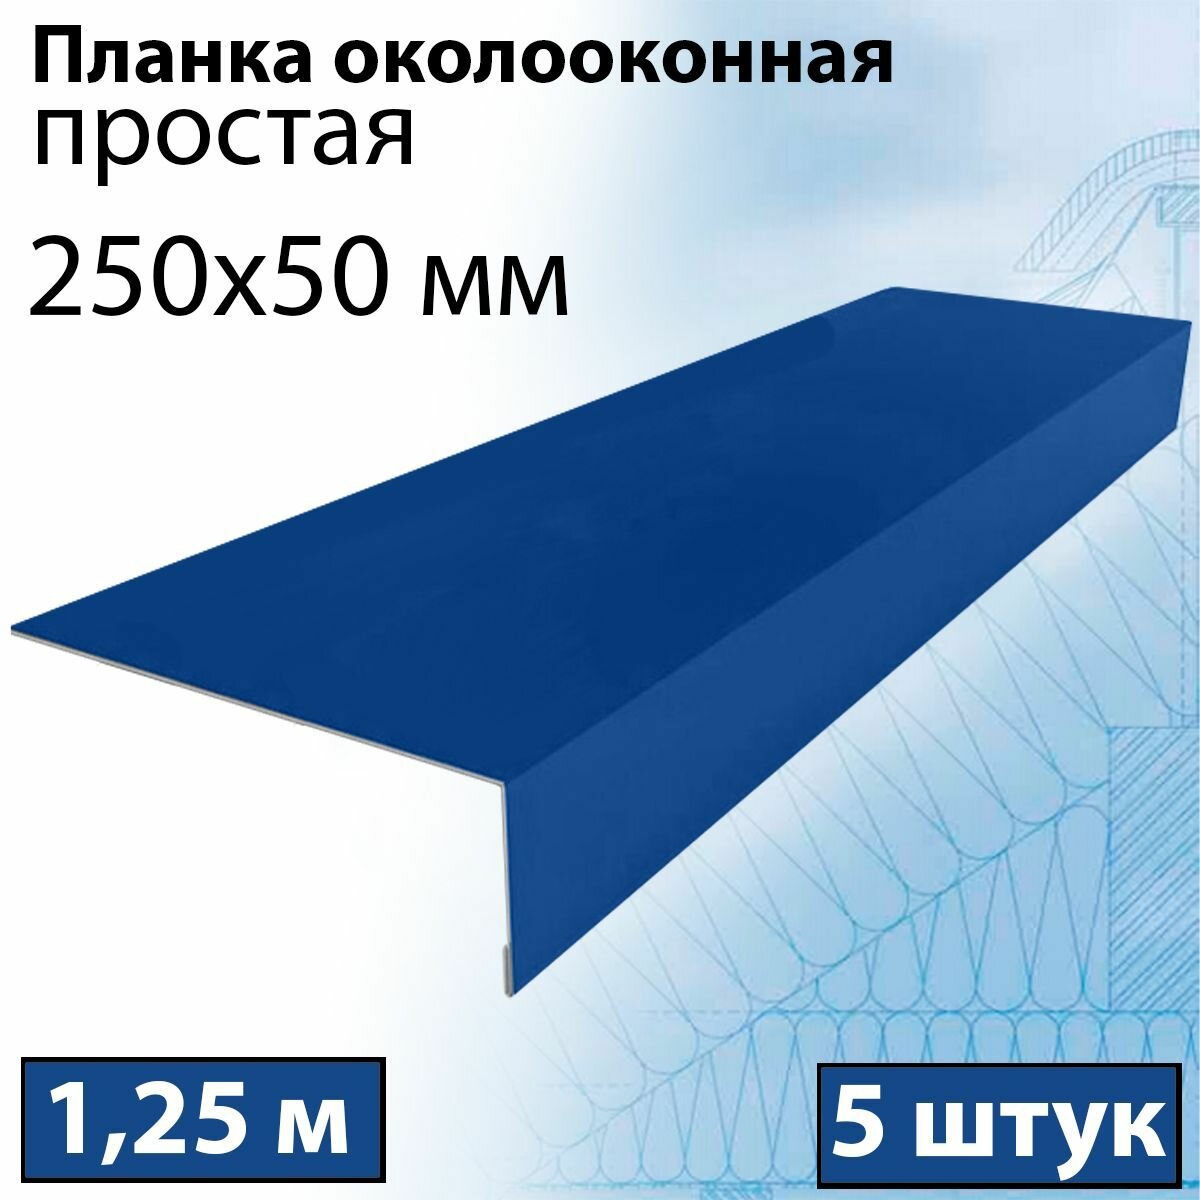 Планка околооконная простая 1,25 м (250х50 мм) 5 штук Планка лобовая металлическая (RAL 5005) синий - фотография № 1